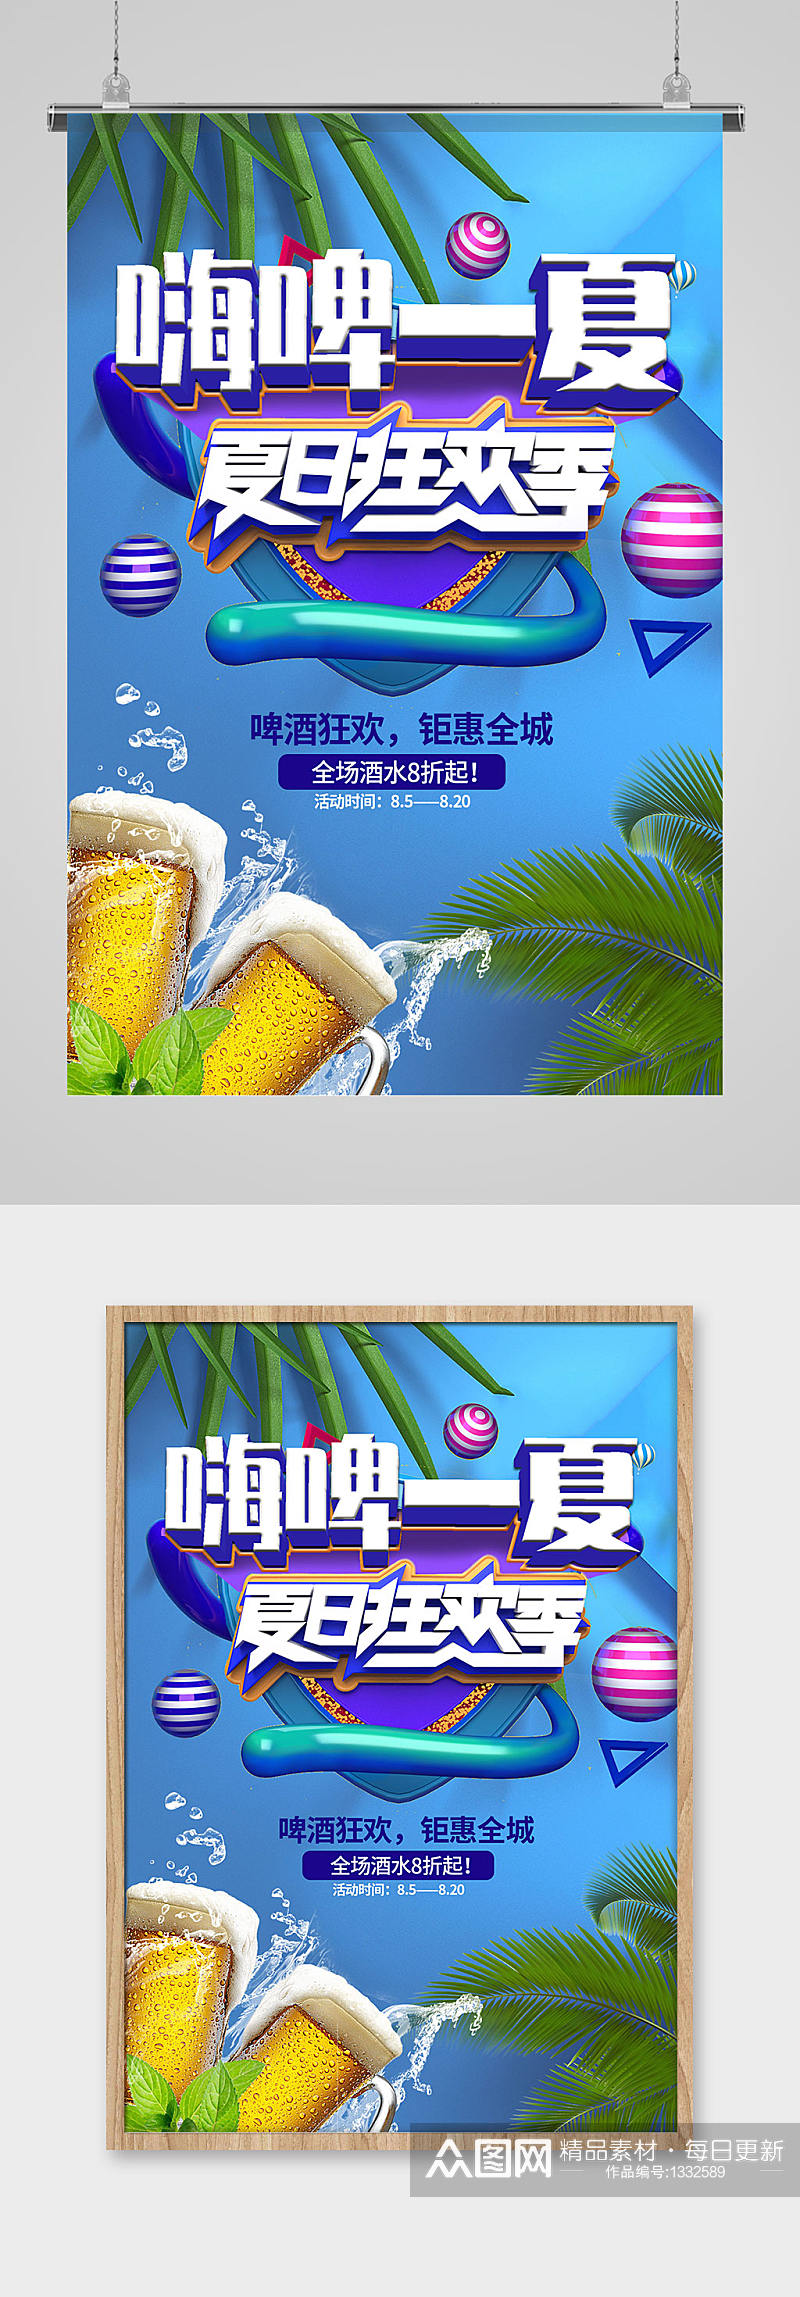 激情啤酒狂欢节促销炫酷海报素材